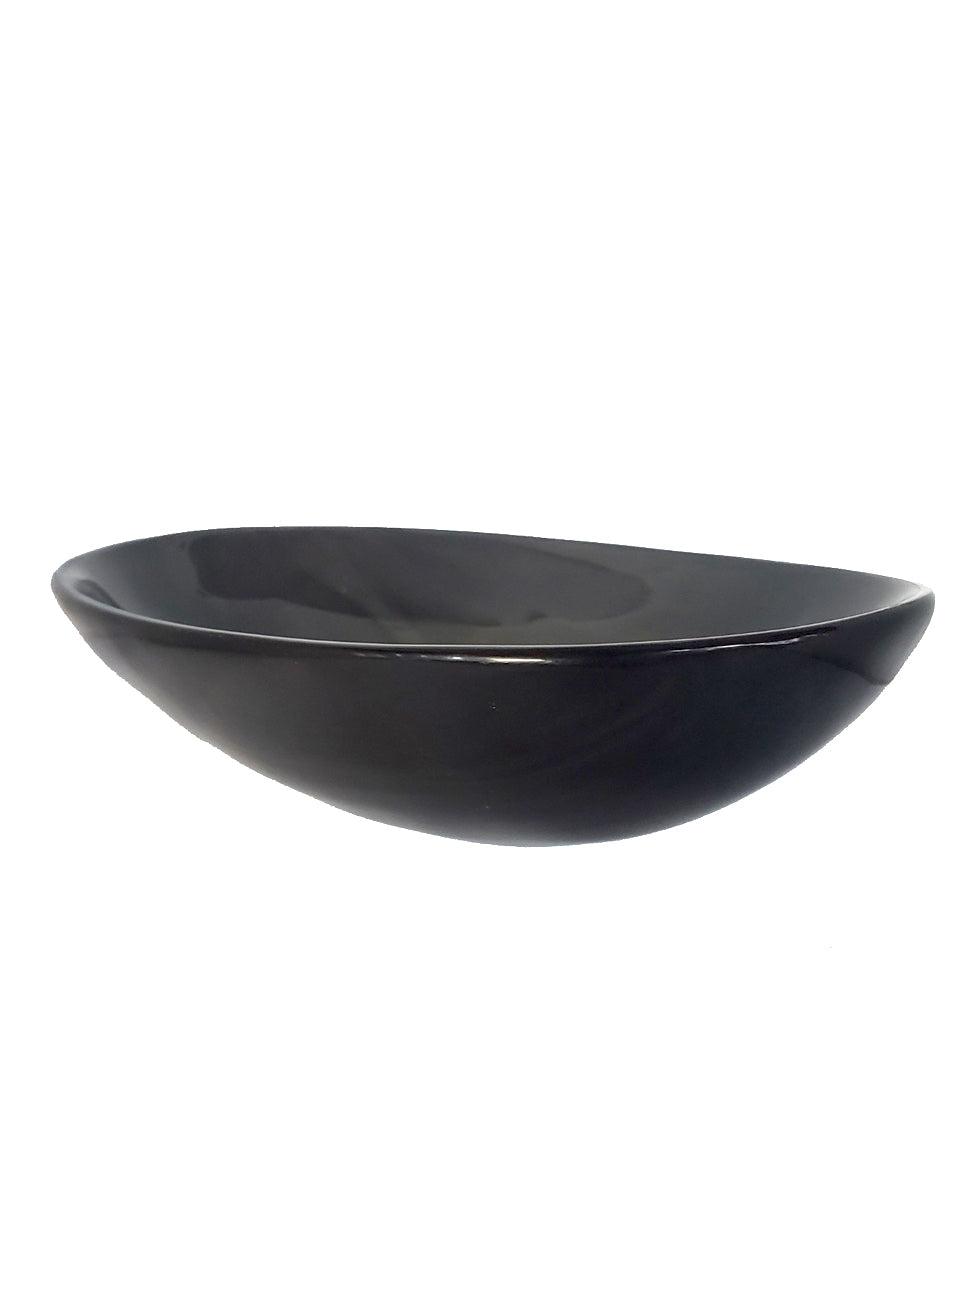 Horn Bowl - Black